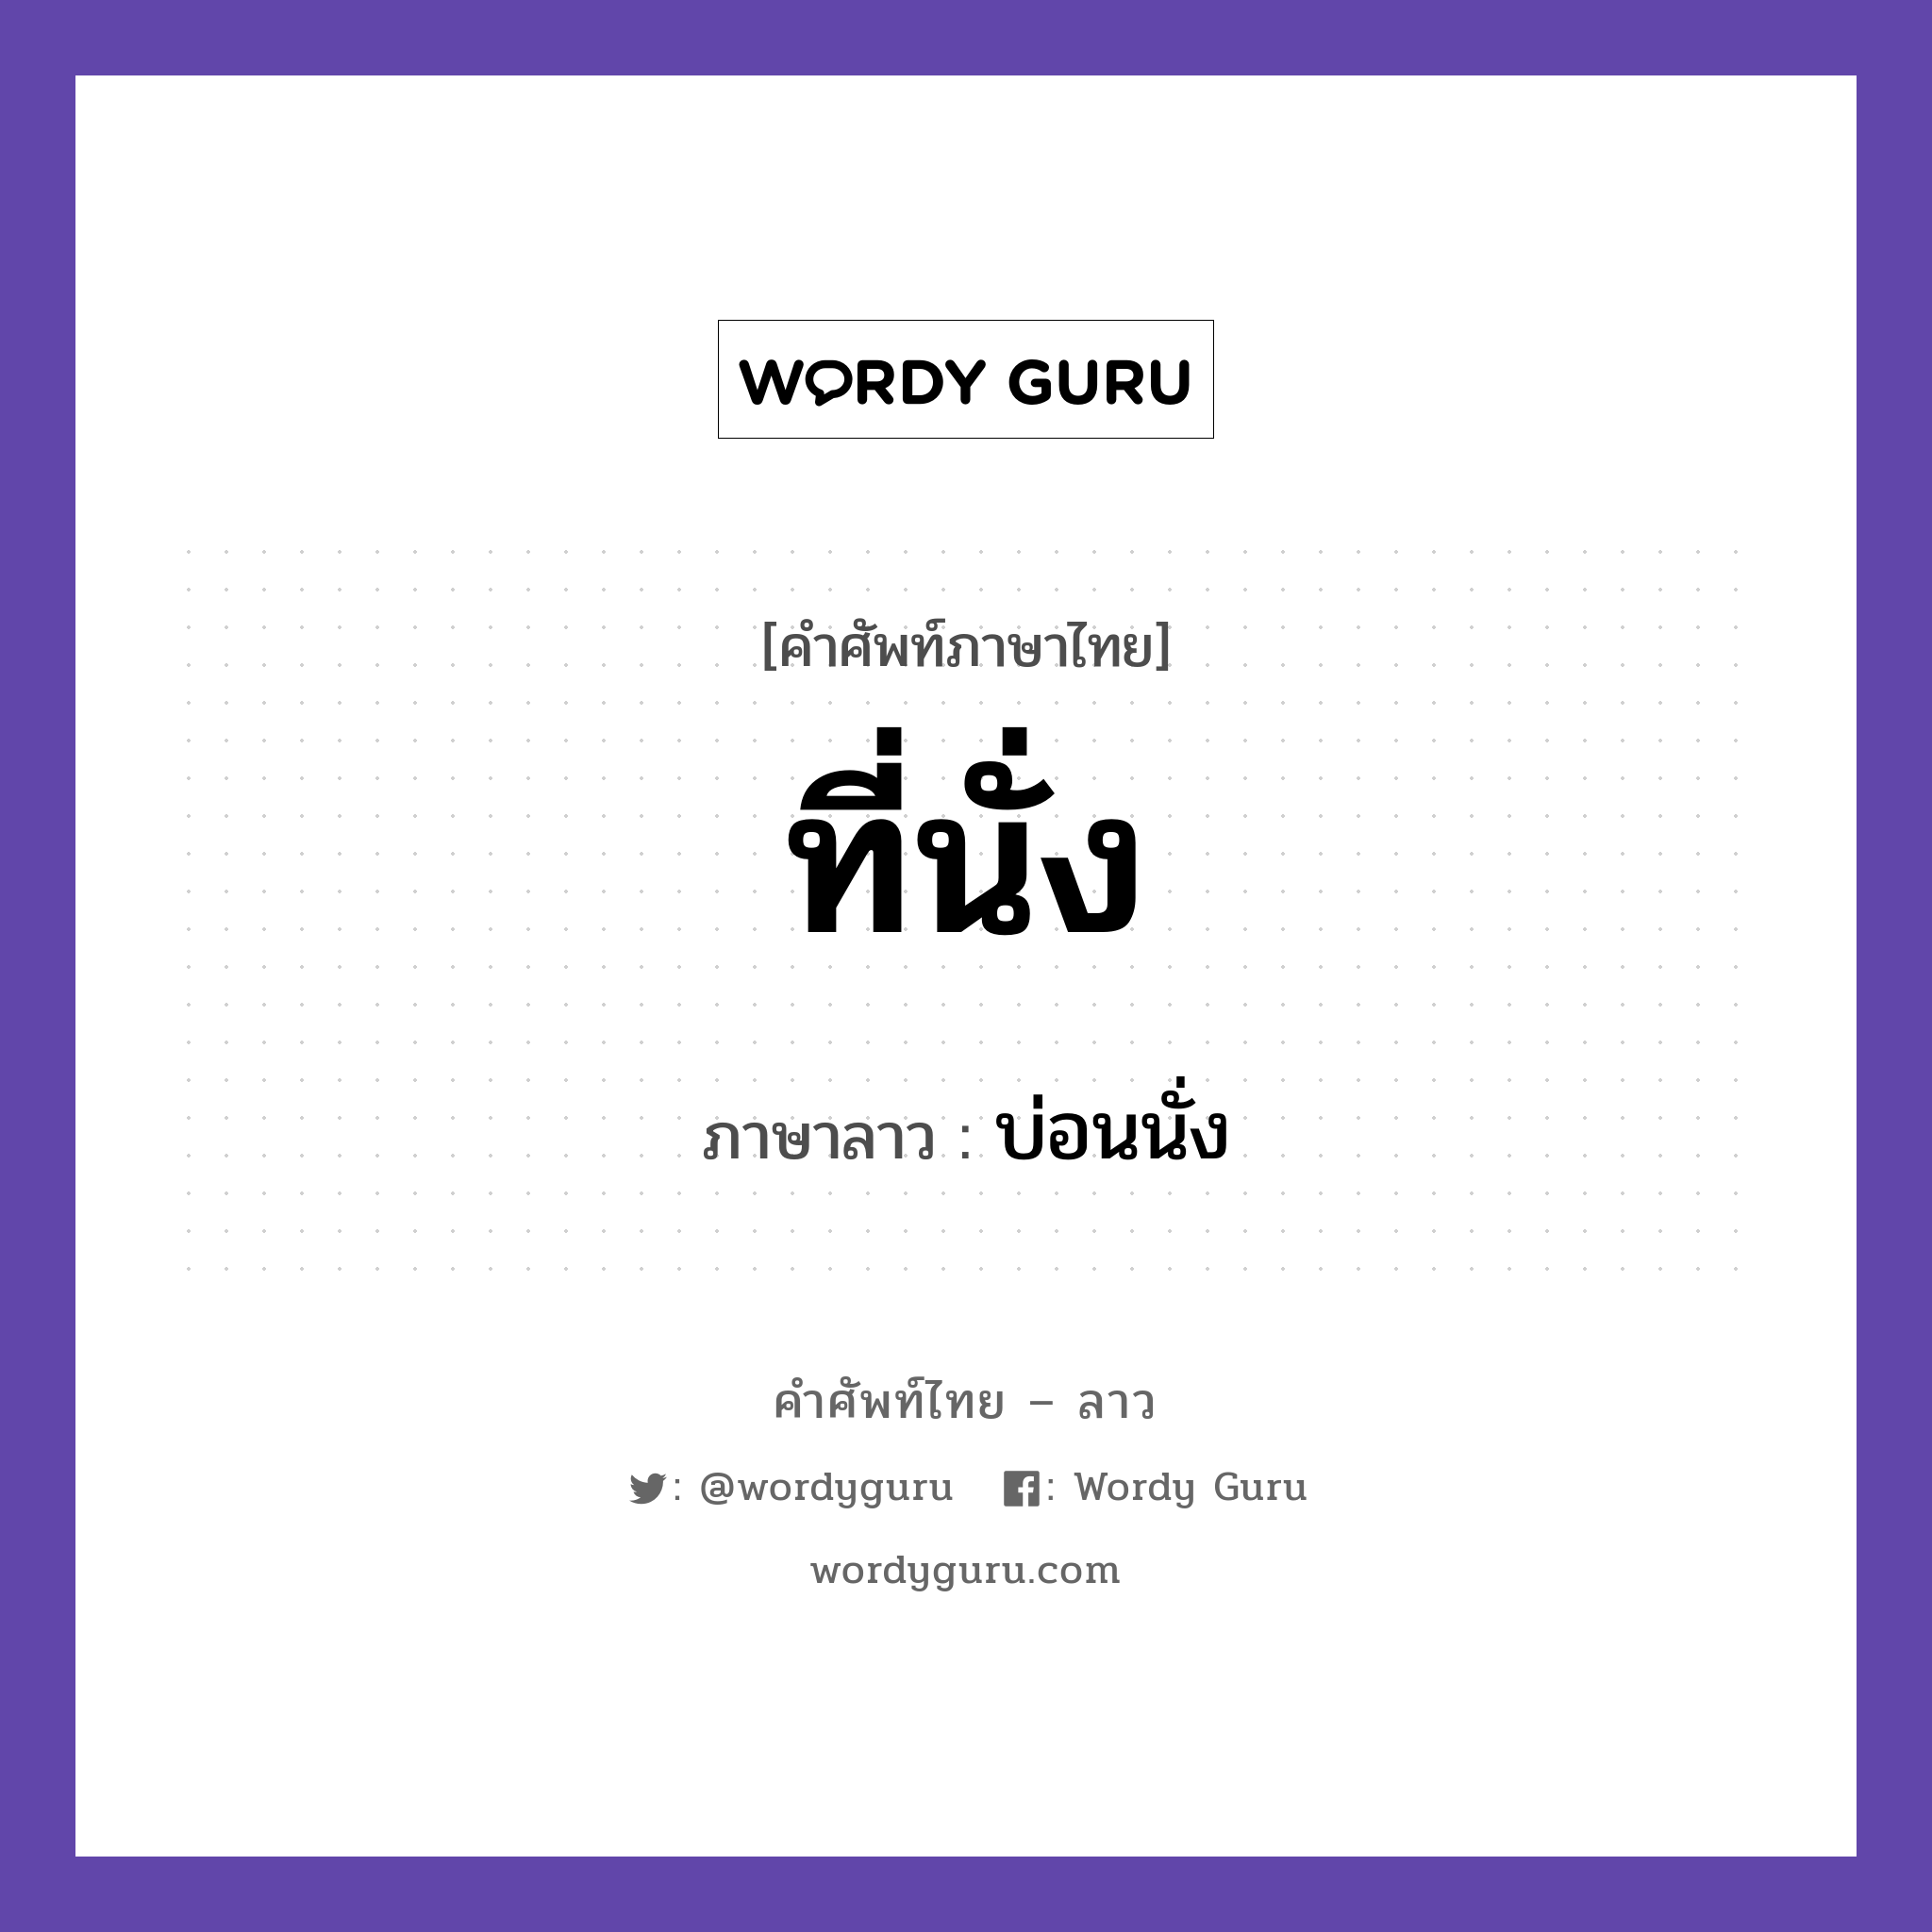 ที่นั่ง ภาษาลาวคืออะไร, คำศัพท์ภาษาไทย - ลาว ที่นั่ง ภาษาลาว บ่อนนั่ง หมวด คำที่พบได้ในชีวิตประจำวัน หมวด คำที่พบได้ในชีวิตประจำวัน